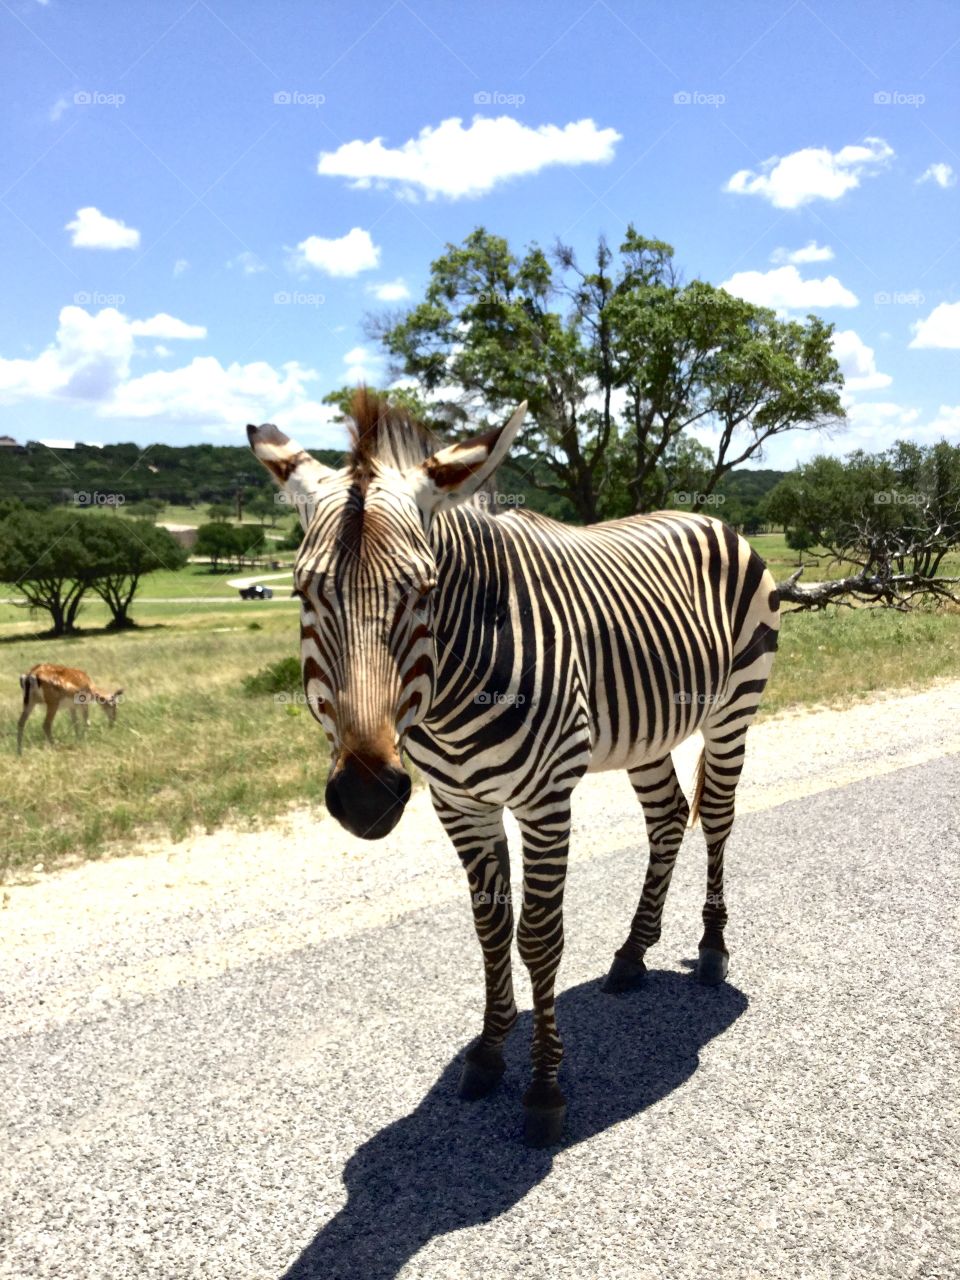 Black and white stripes in the safari